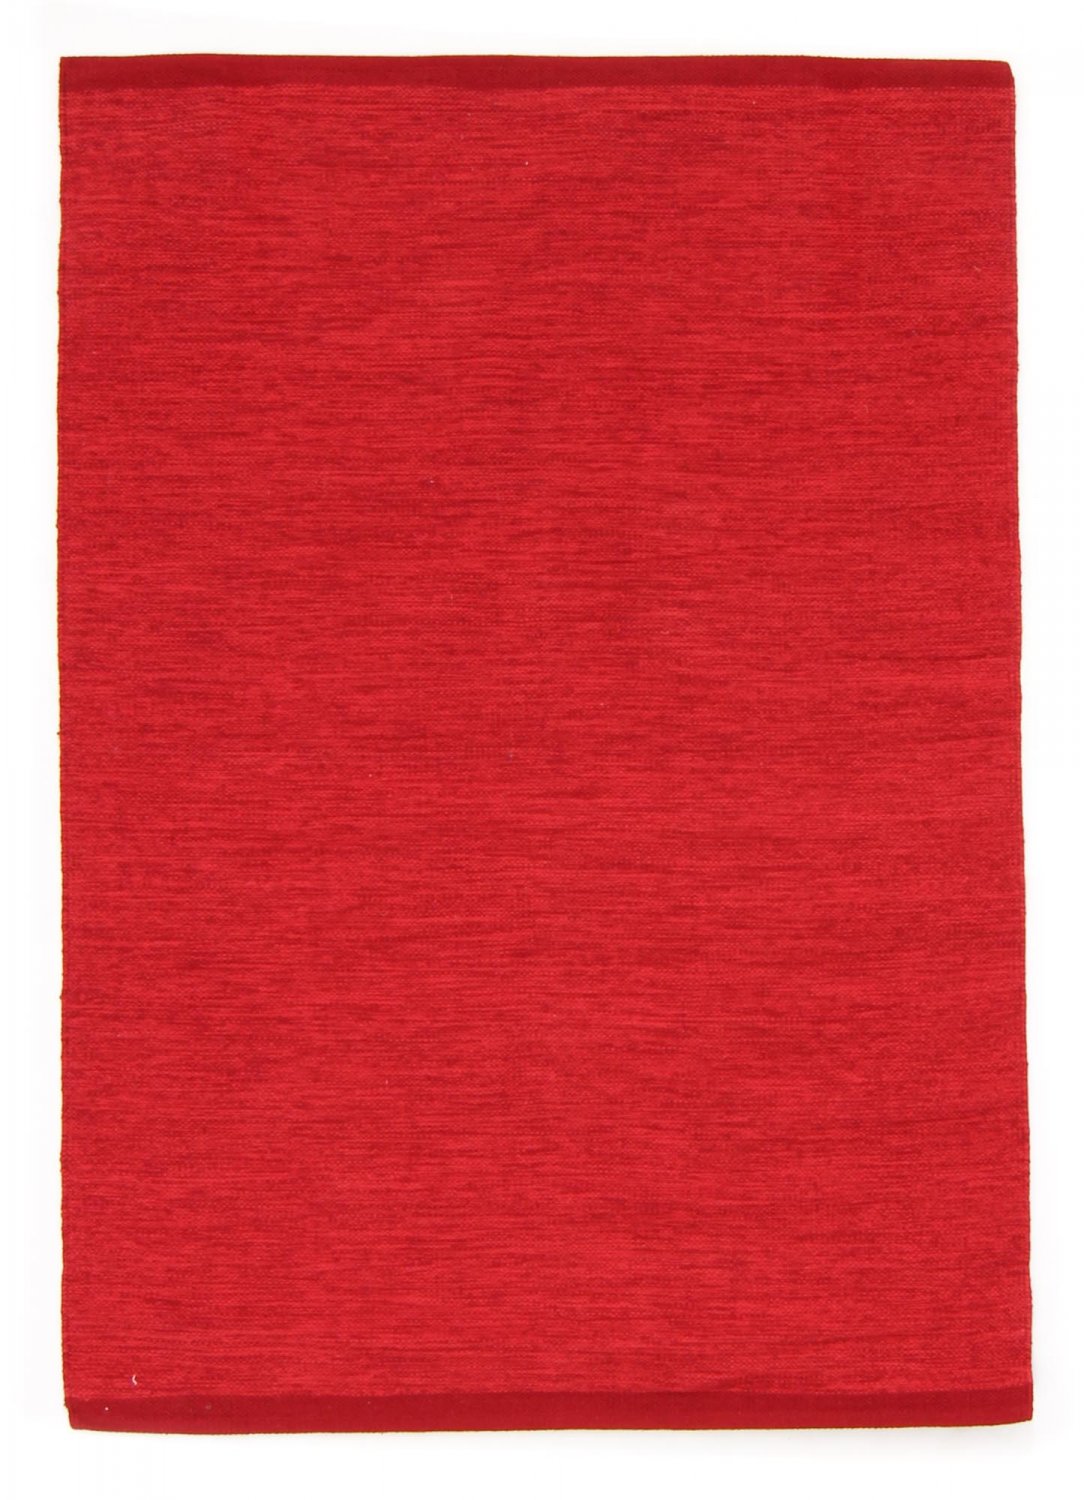 Voddenkleed - Slite (rood)